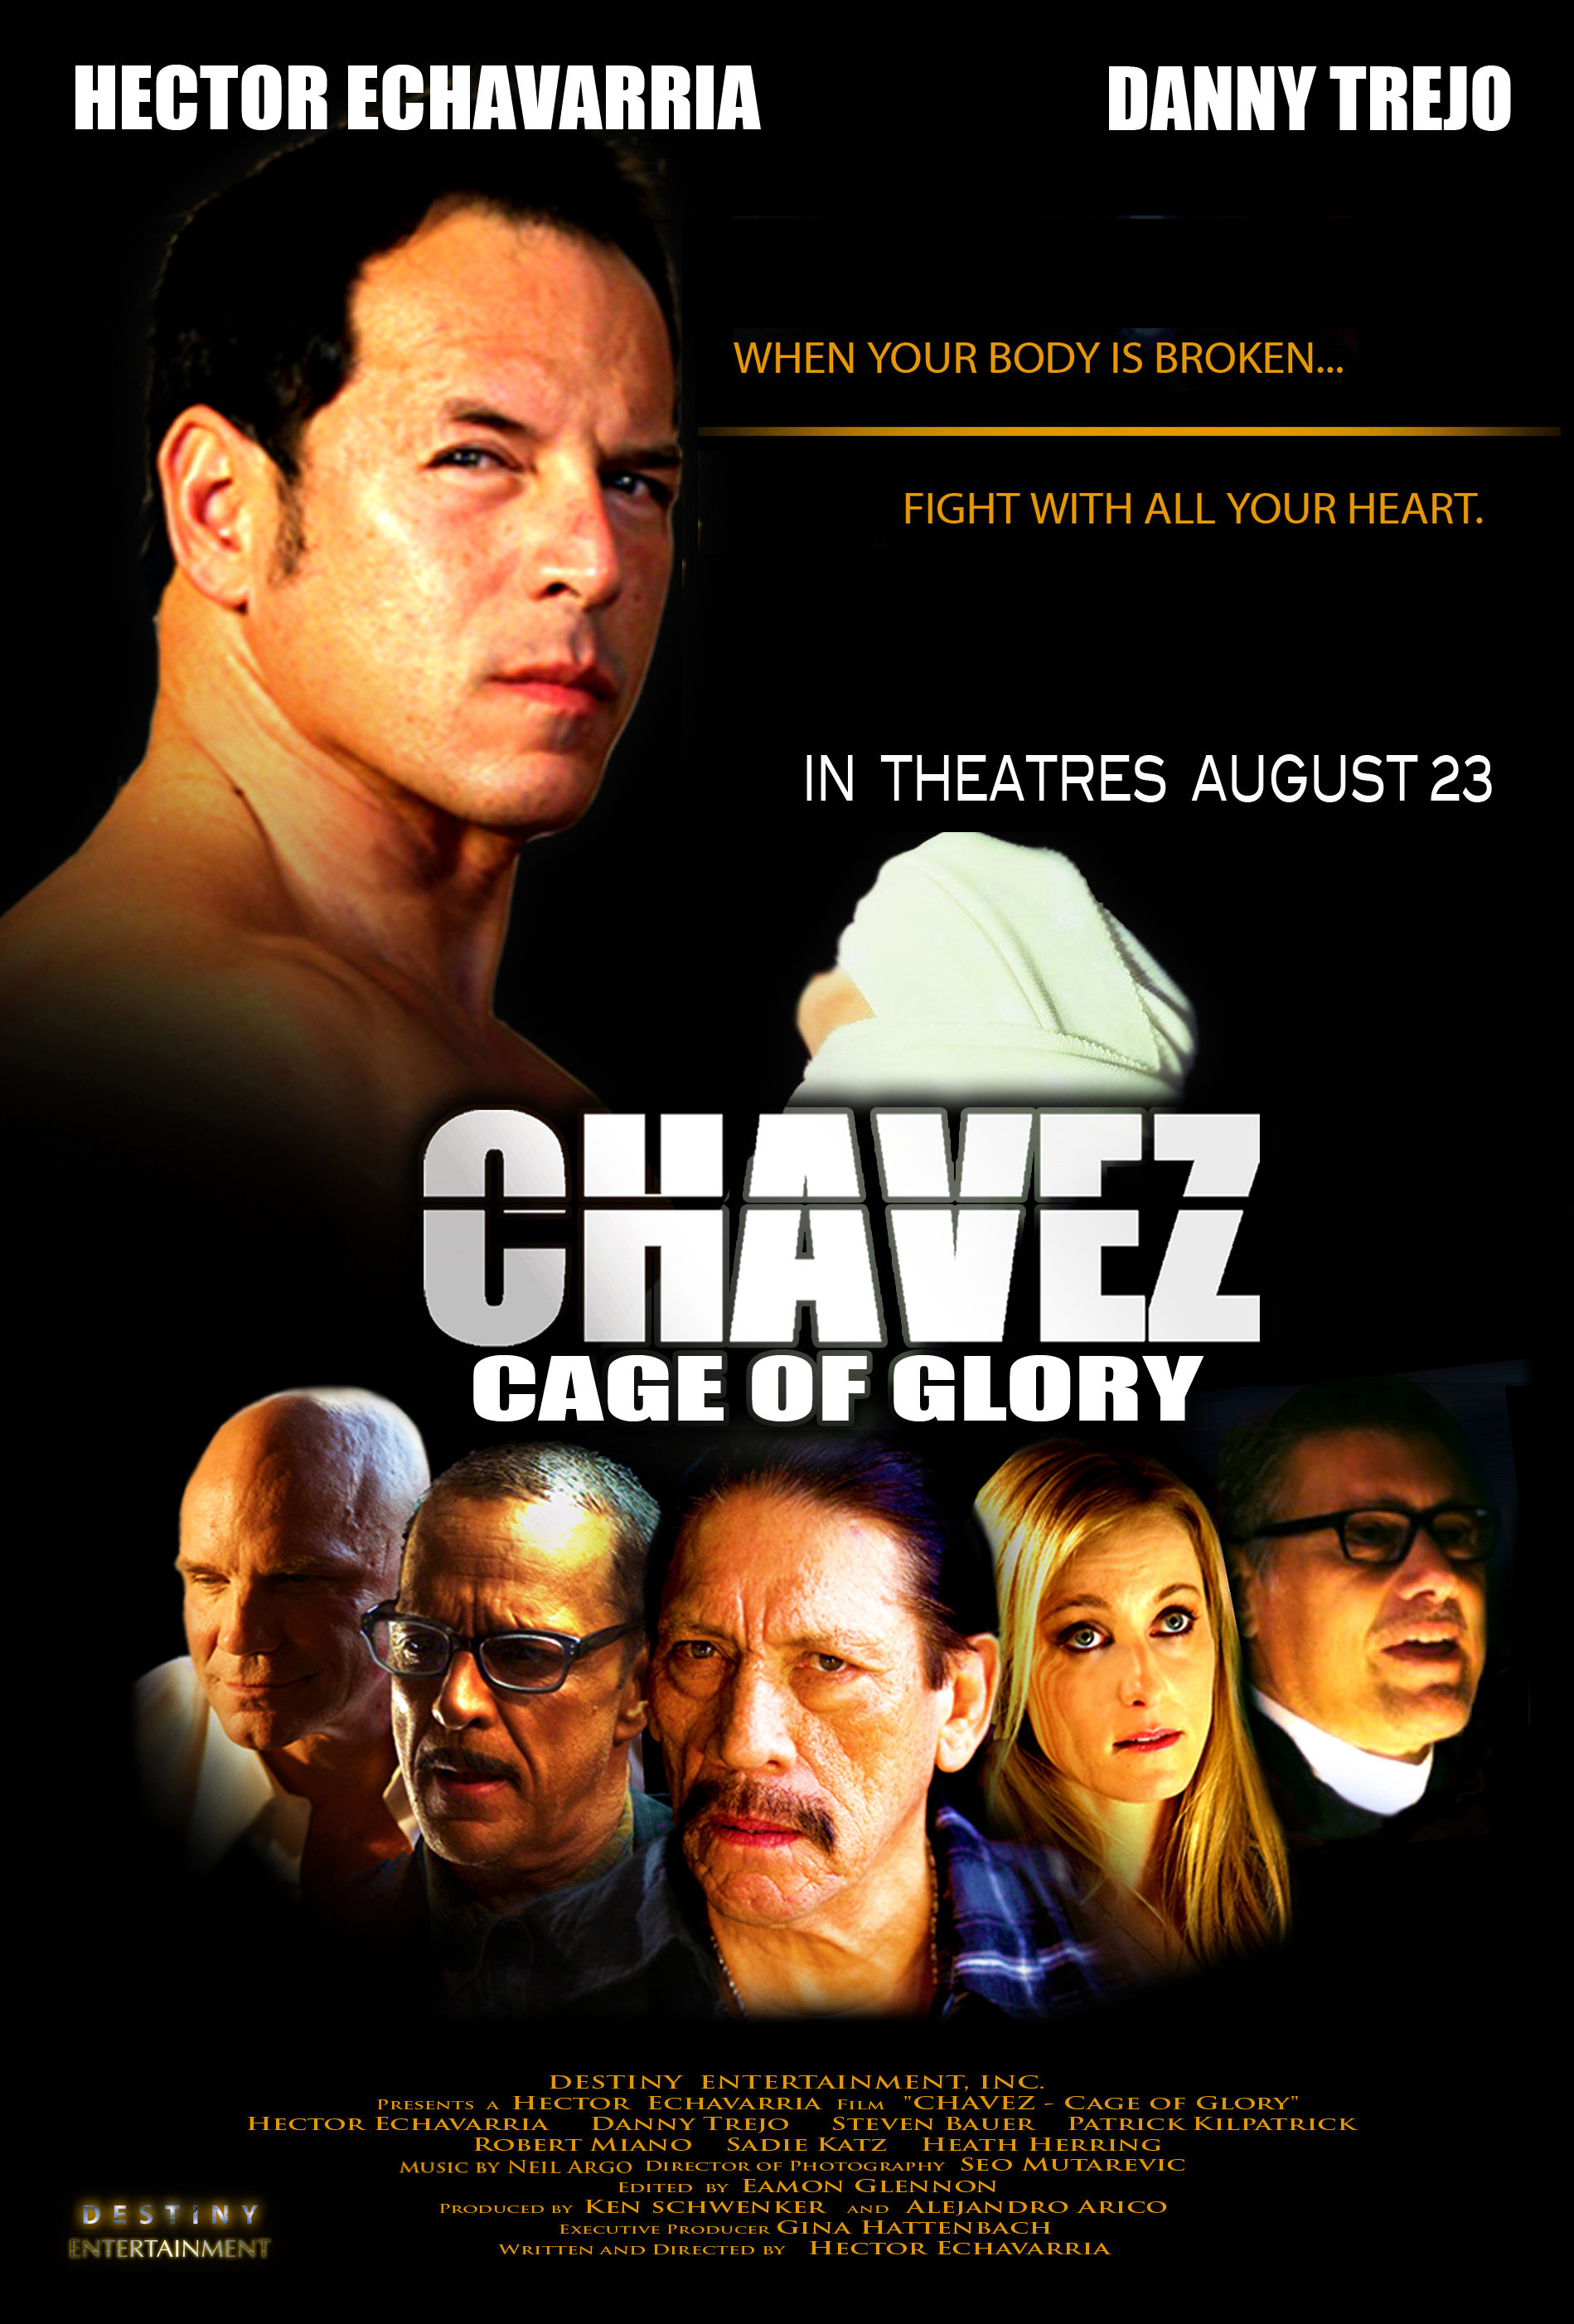 Steven Bauer, Danny Trejo, Hector Echavarria, Patrick Kilpatrick, James Russo and Sadie Katz in Chavez Cage of Glory (2013)